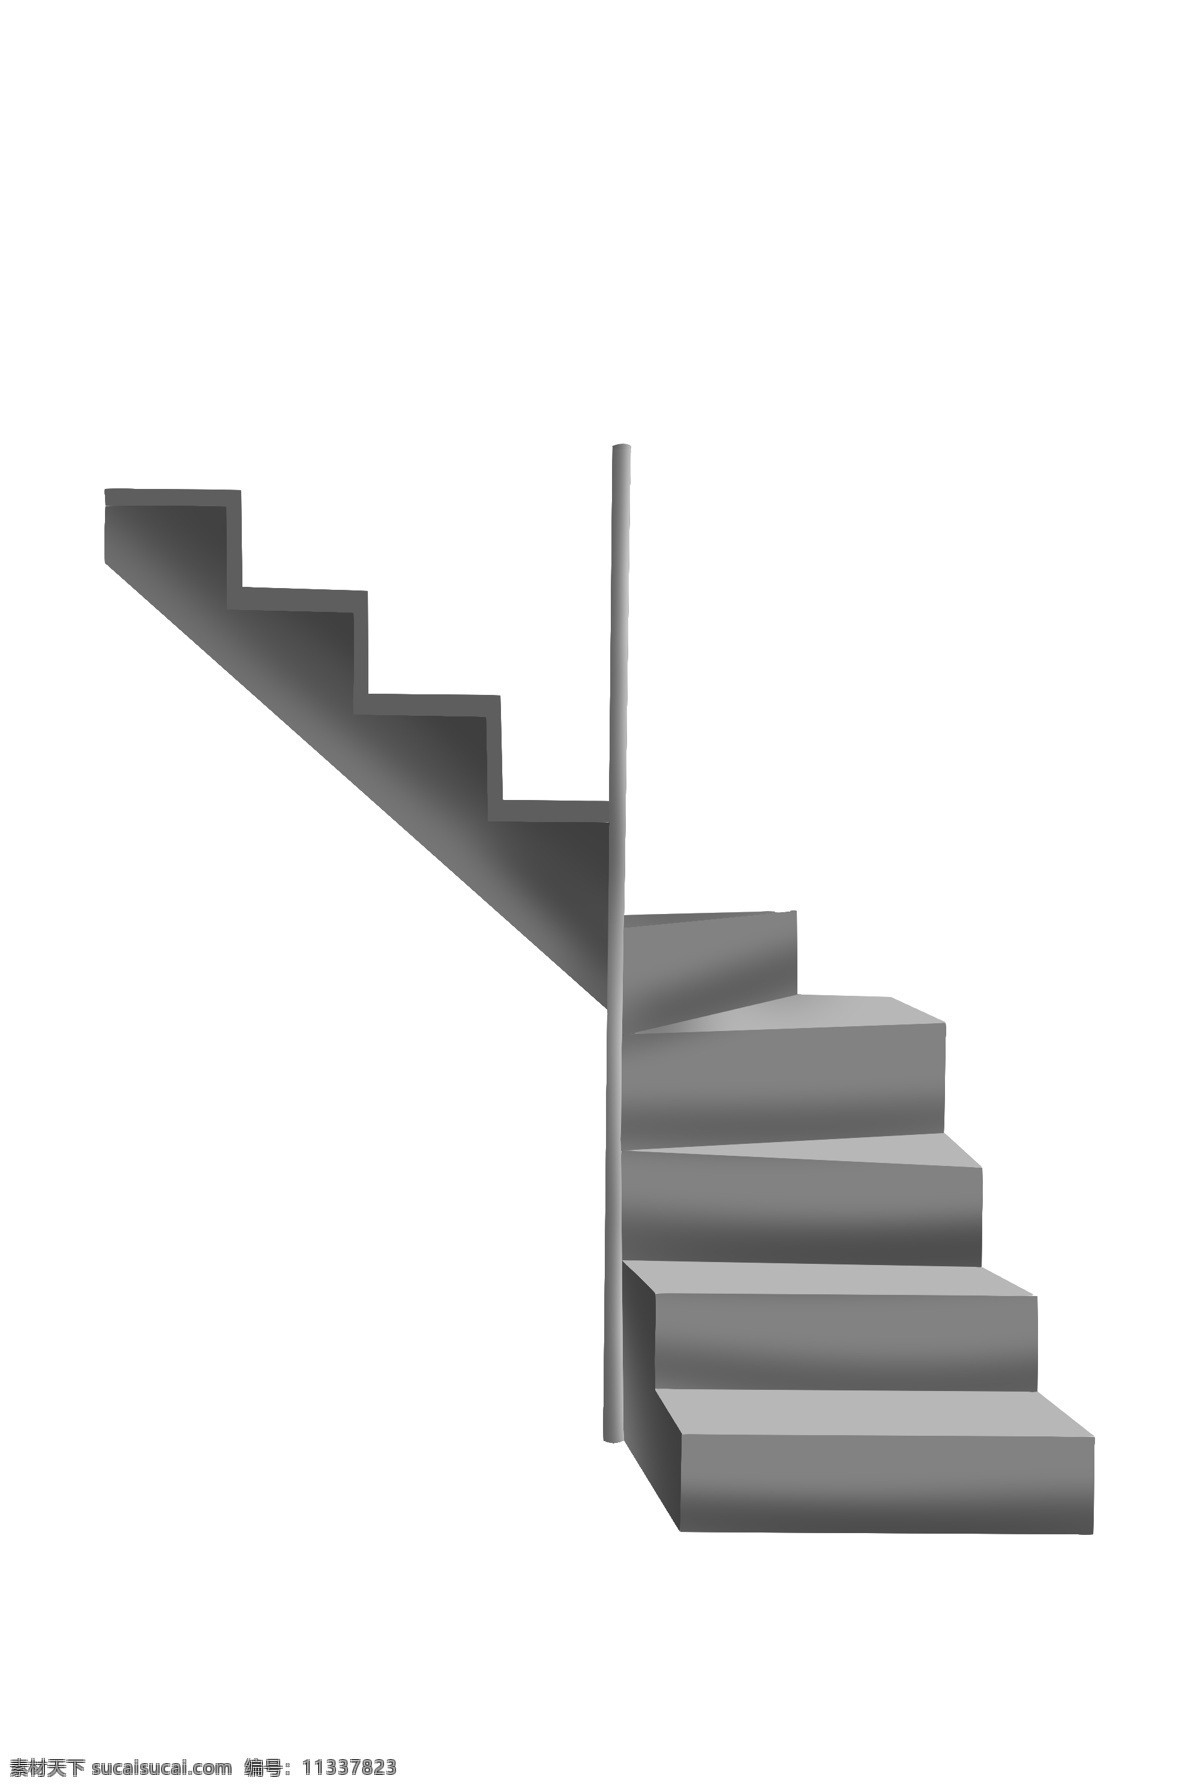 灰色 立体 楼梯 插画 攀爬楼梯 灰色楼梯 立体楼梯 楼梯插图 建筑 爬楼梯 楼梯房